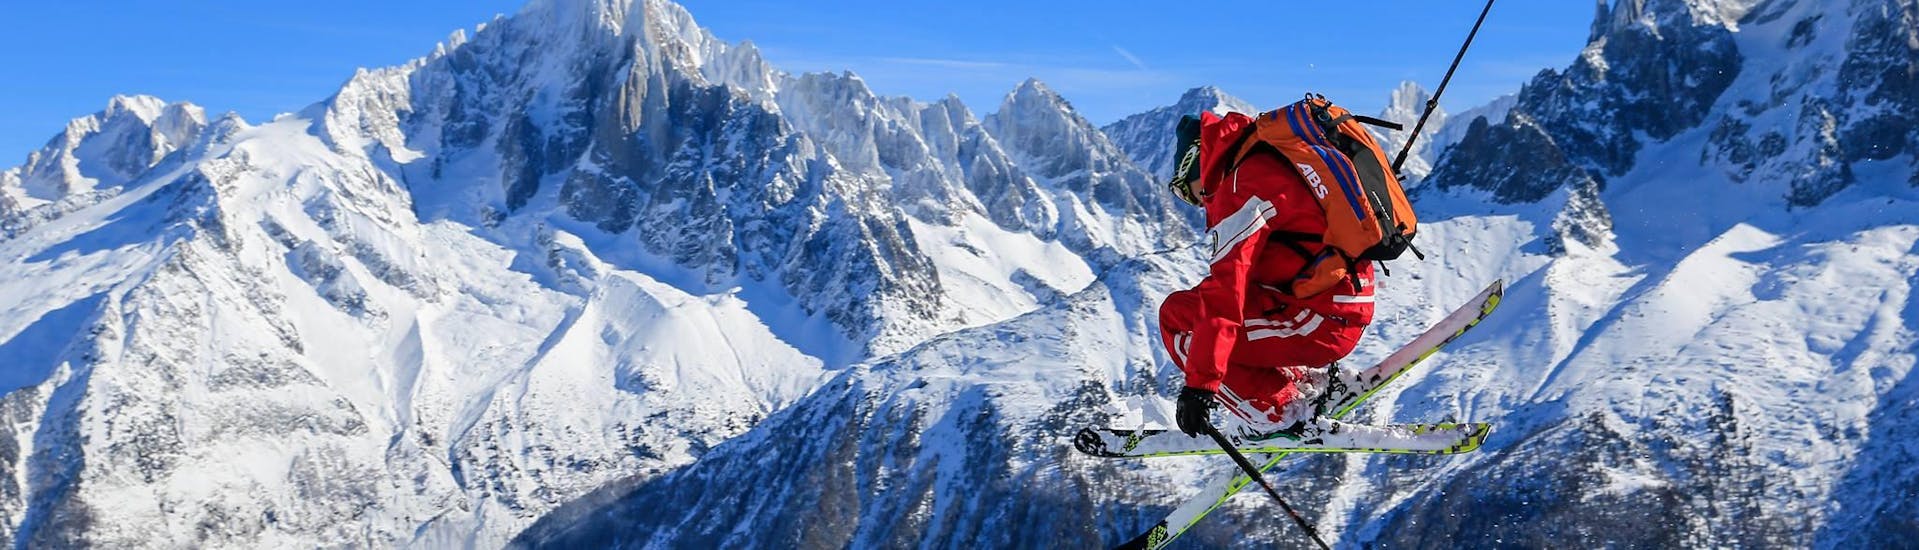 Davanti allo sfondo di una montagna, uno sciatore salta mentre fa freeride durante il tour di sci fuori pista "Mont Blanc Ski Discovery" con la scuola di sci ESF Chamonix.